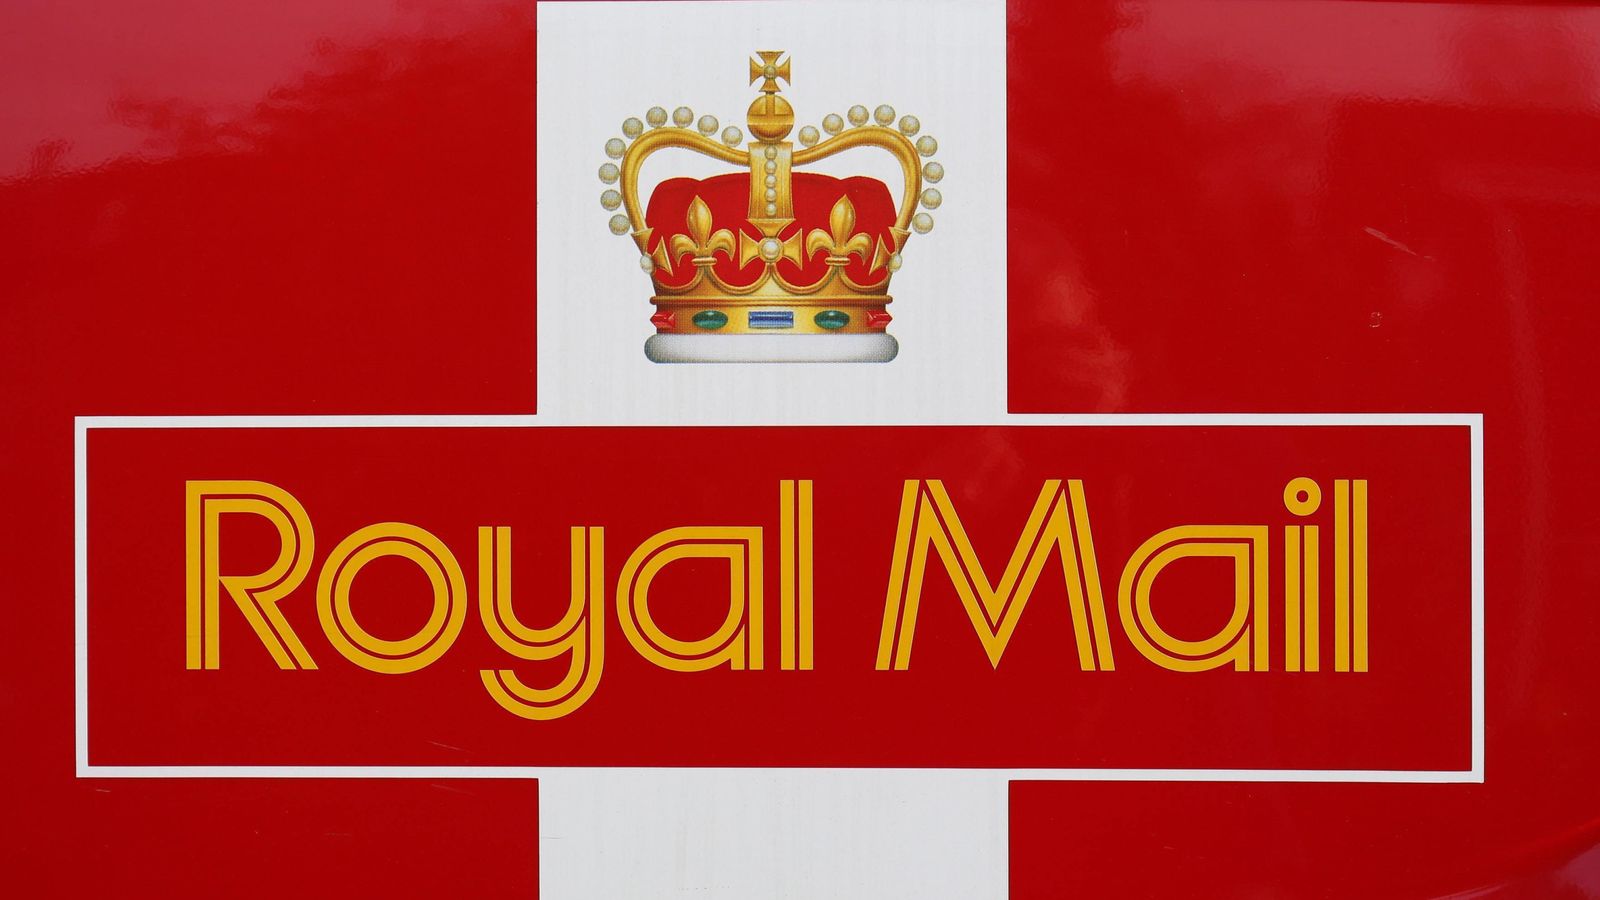 Royal Mail memberi penghargaan kepada investor dengan gaji £400 juta setelah COVID meningkatkan ke parsel |  Berita bisnis